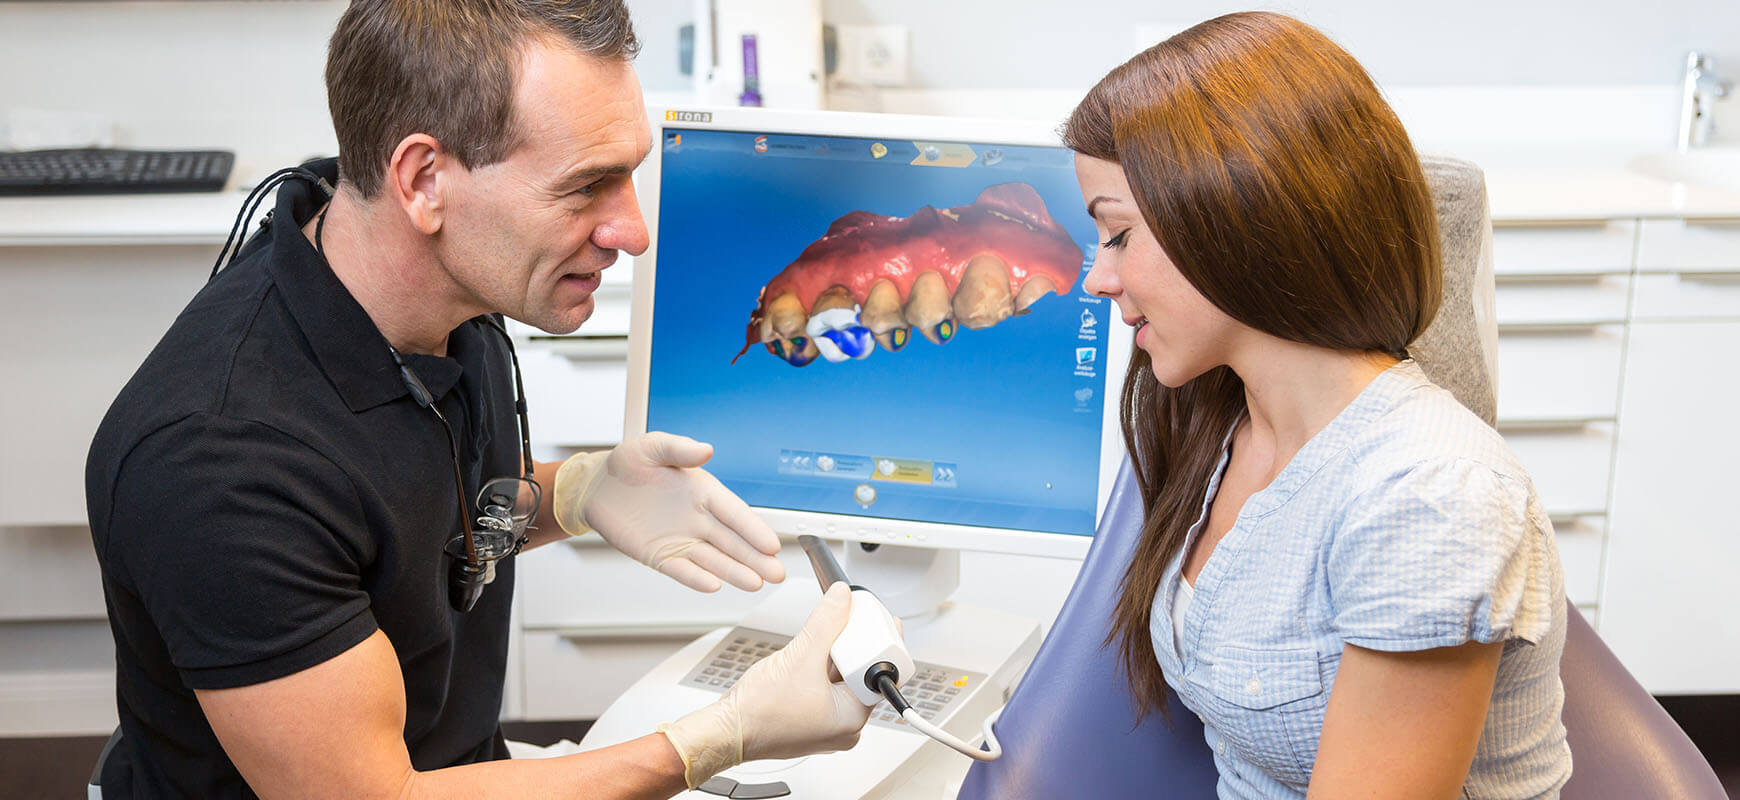 Dijital Diş Hekimliği | CEREC / Cad Cam